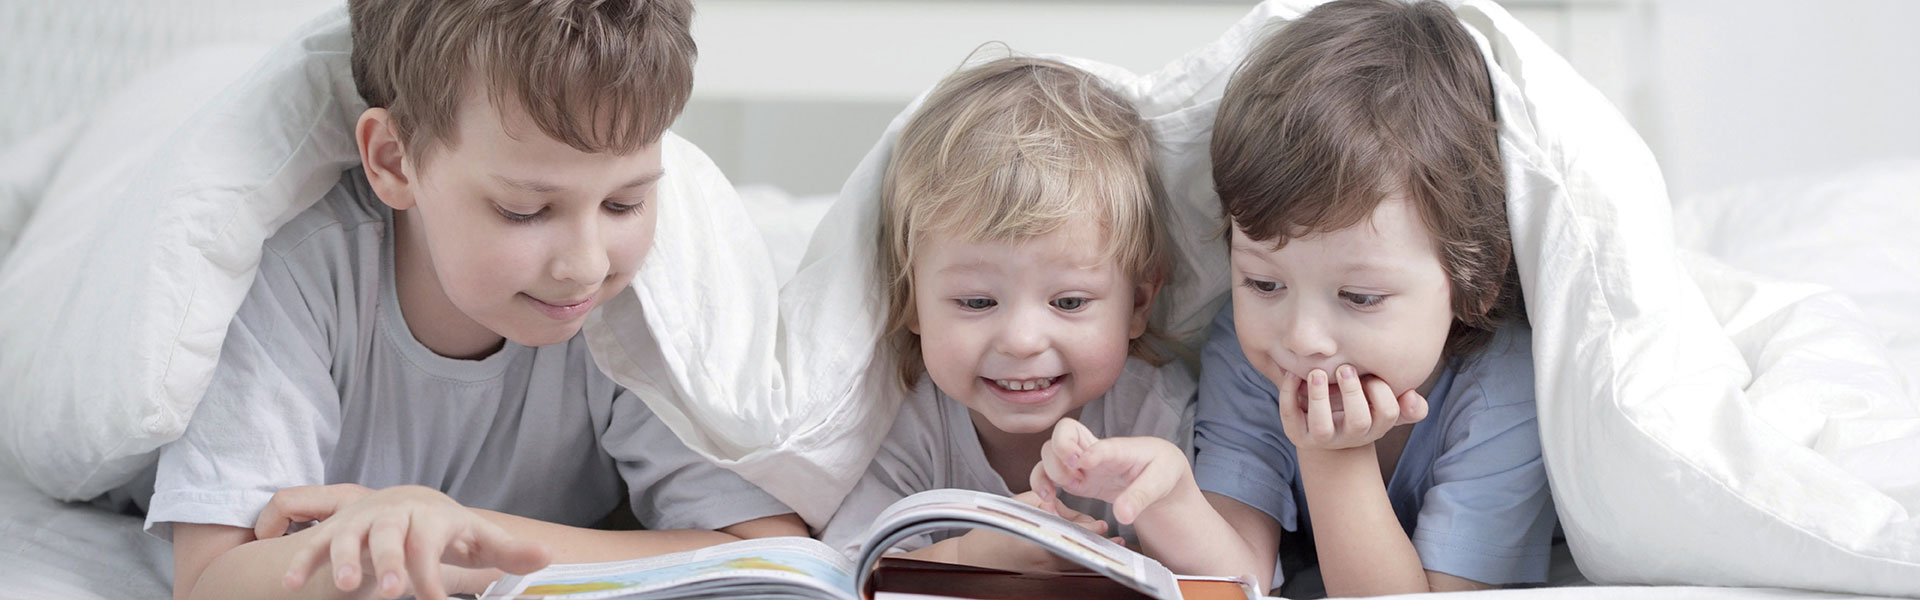 Children reading a book under duvet - GForce New Zealand